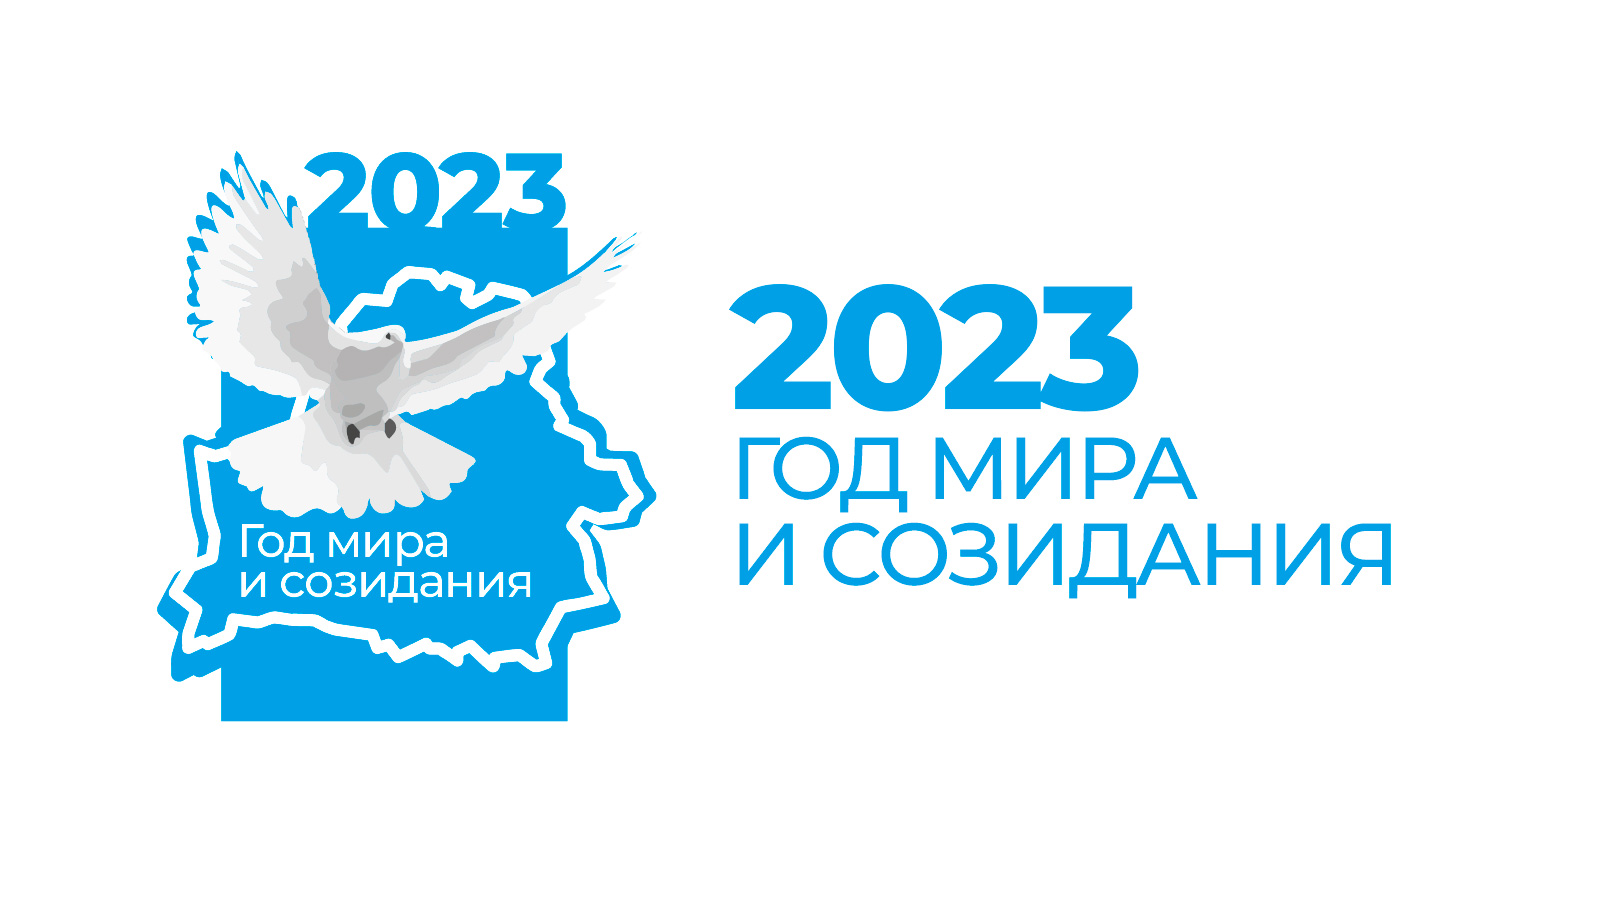 2023: Год мира и созидания